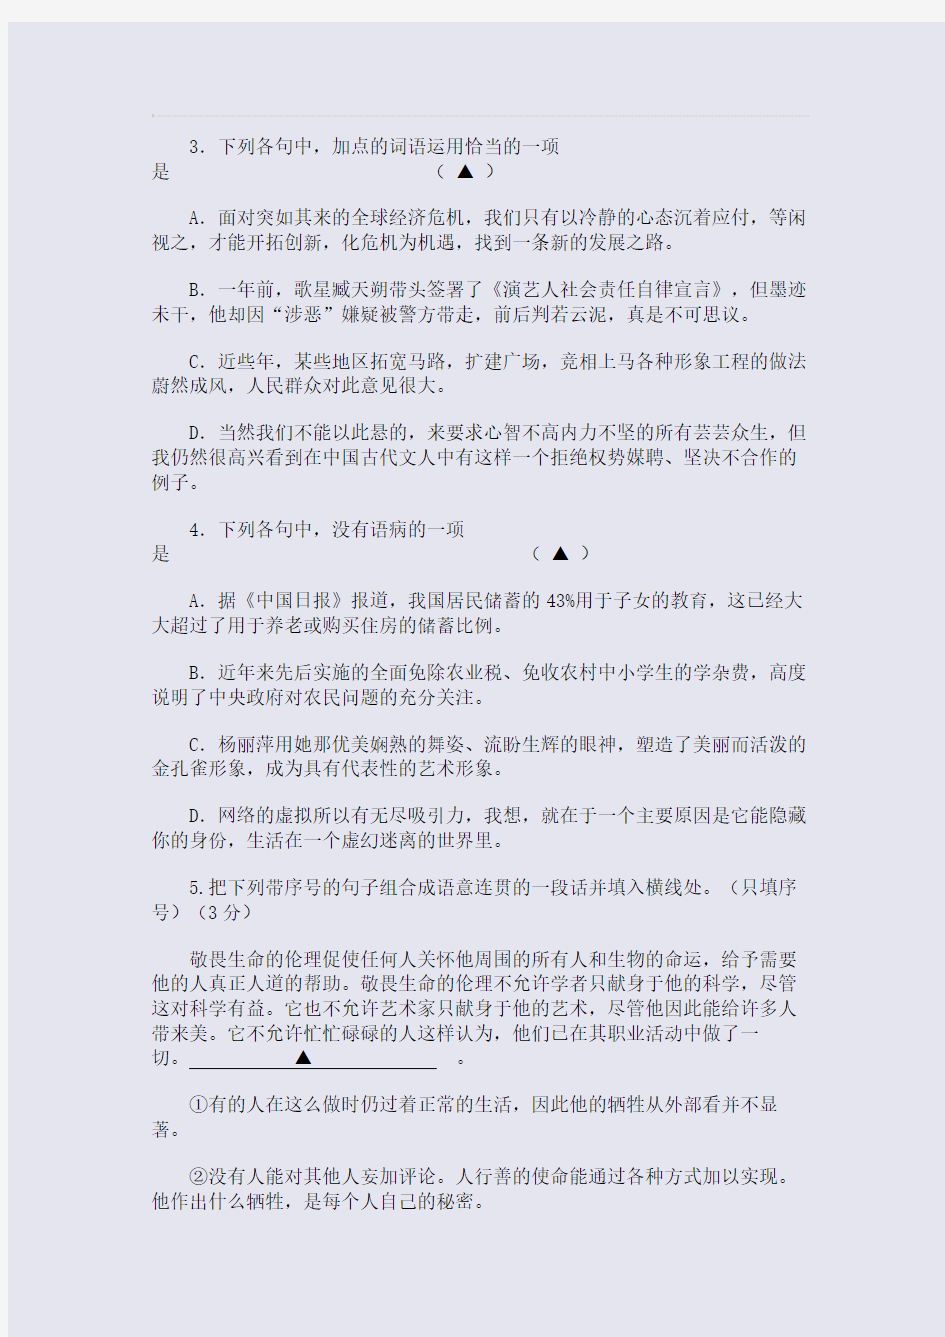 2015届高考模拟高考(124)浙江省宁波重点中学高三期中考试(整理精校版)